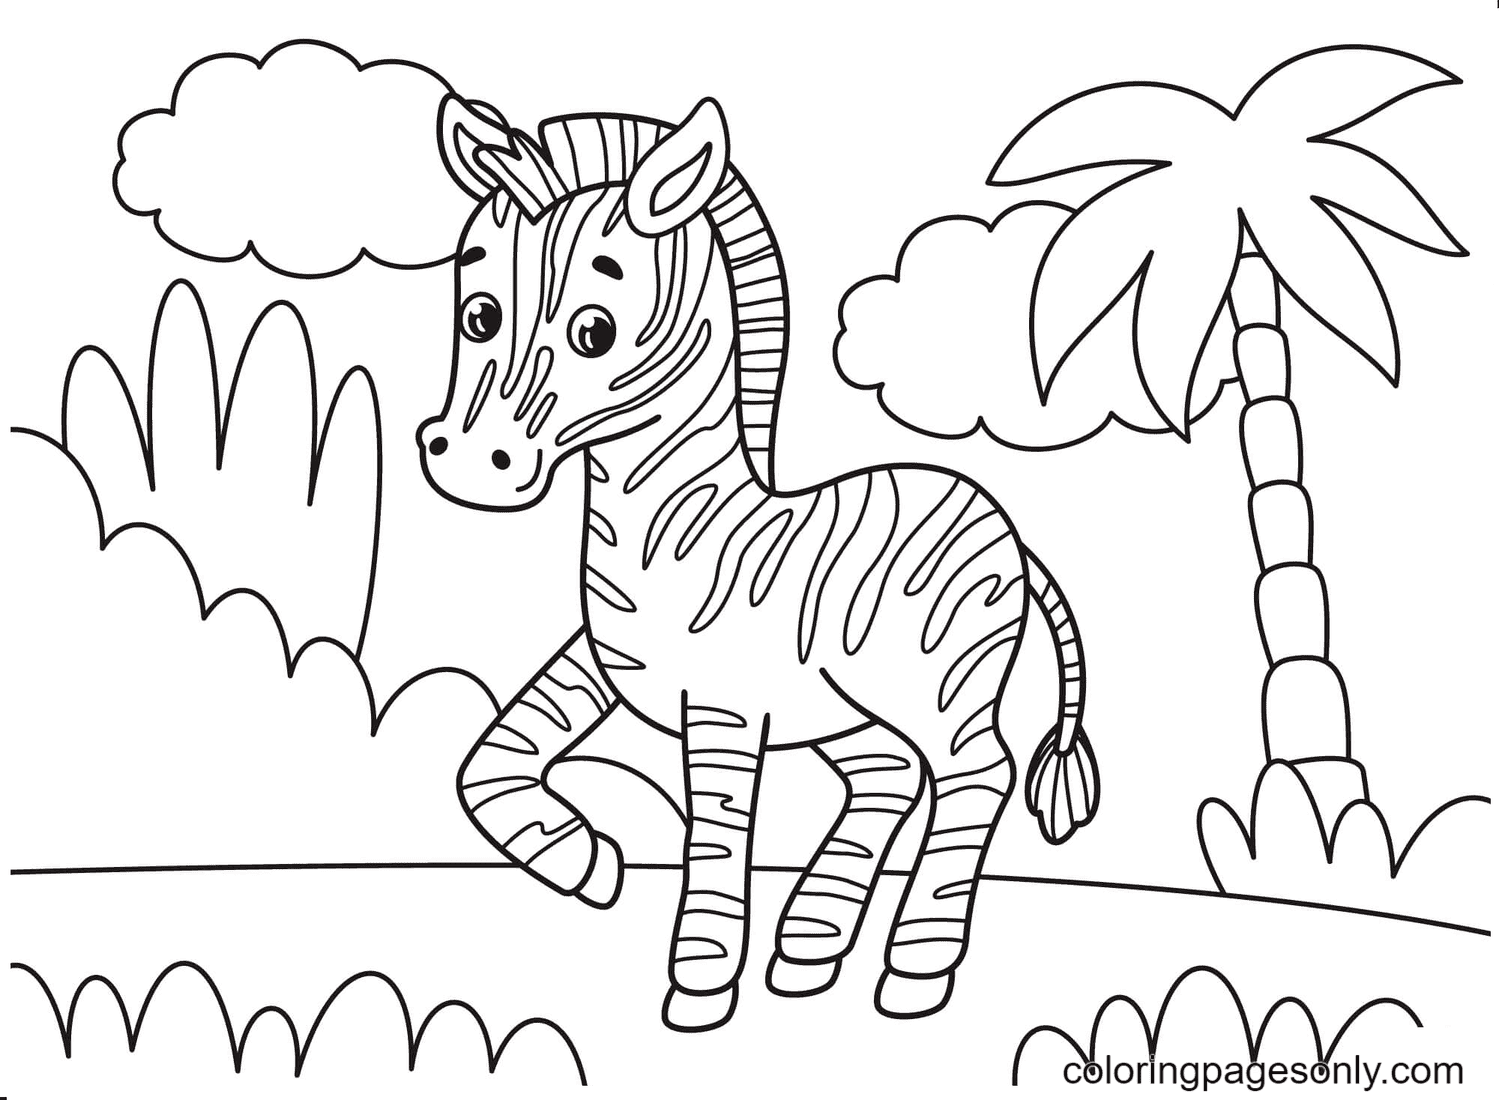 Una simpatica zebra nella pagina da colorare foresta